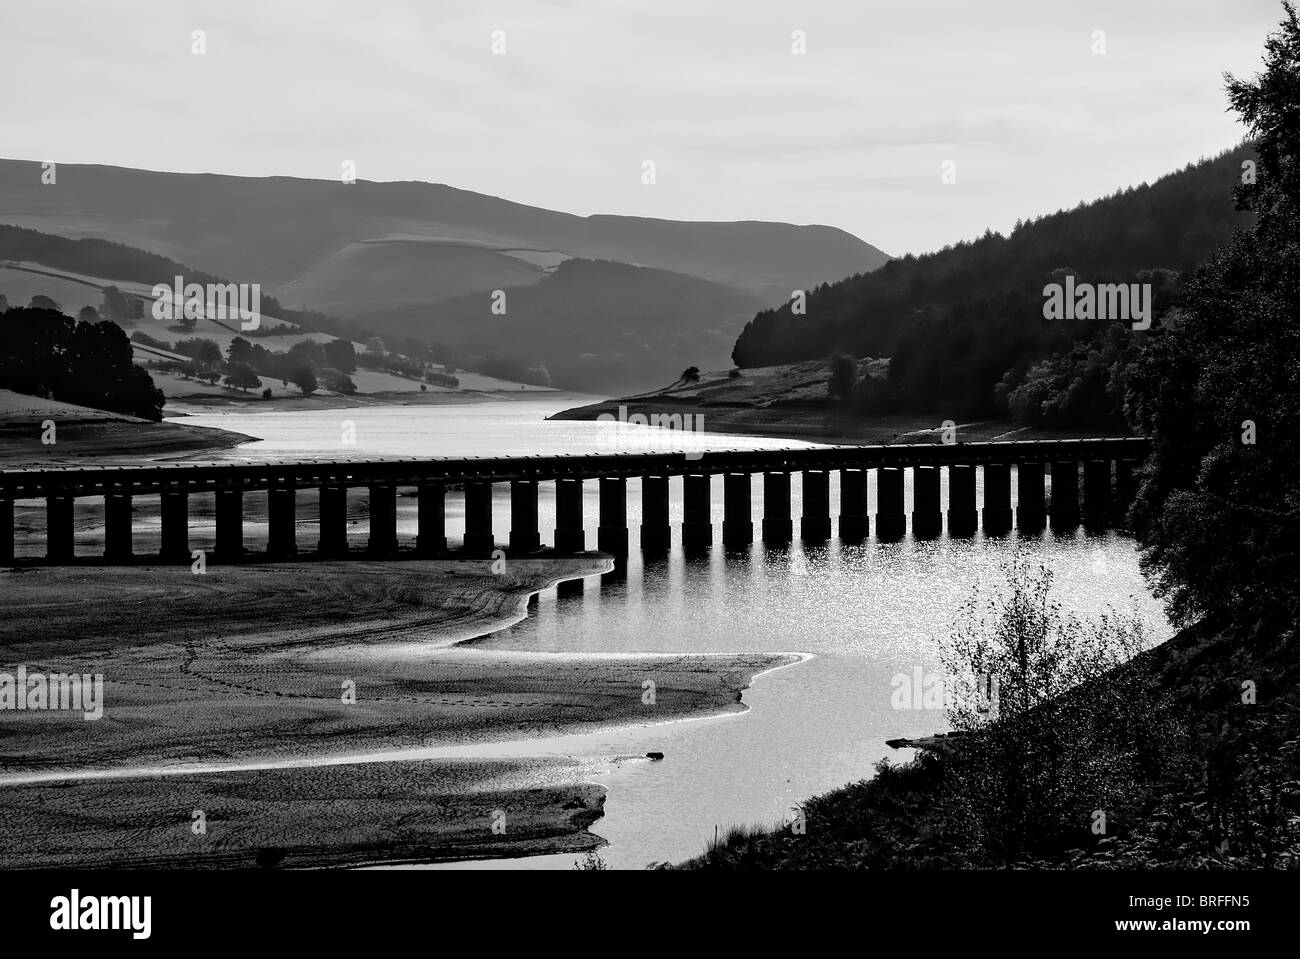 aqueduct across ladybower dam Derbyshire england uk Stock Photo